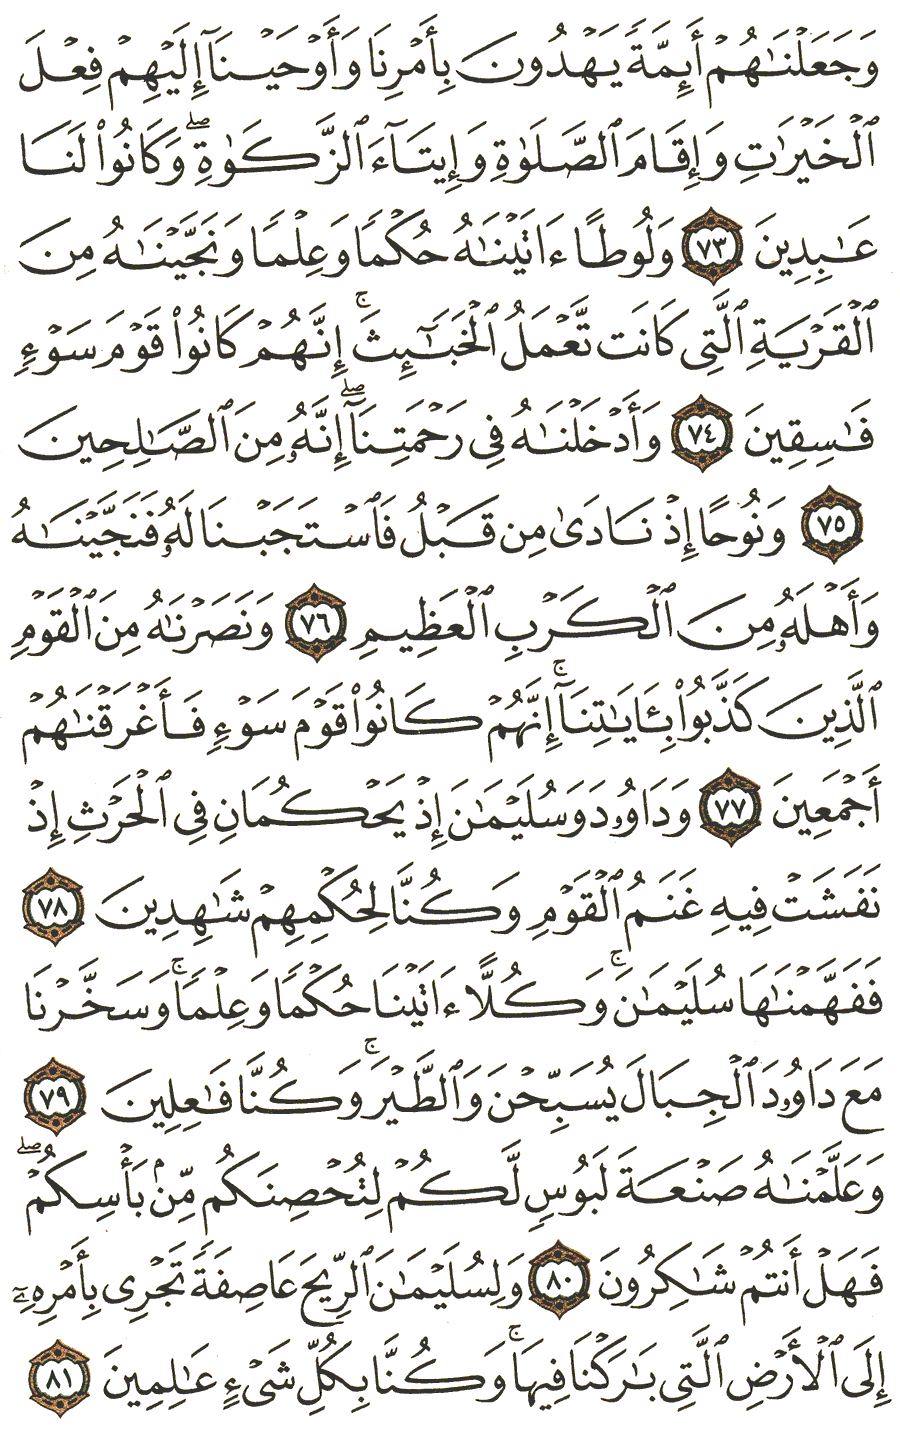 الصفحة 328 من القرآن الكريم